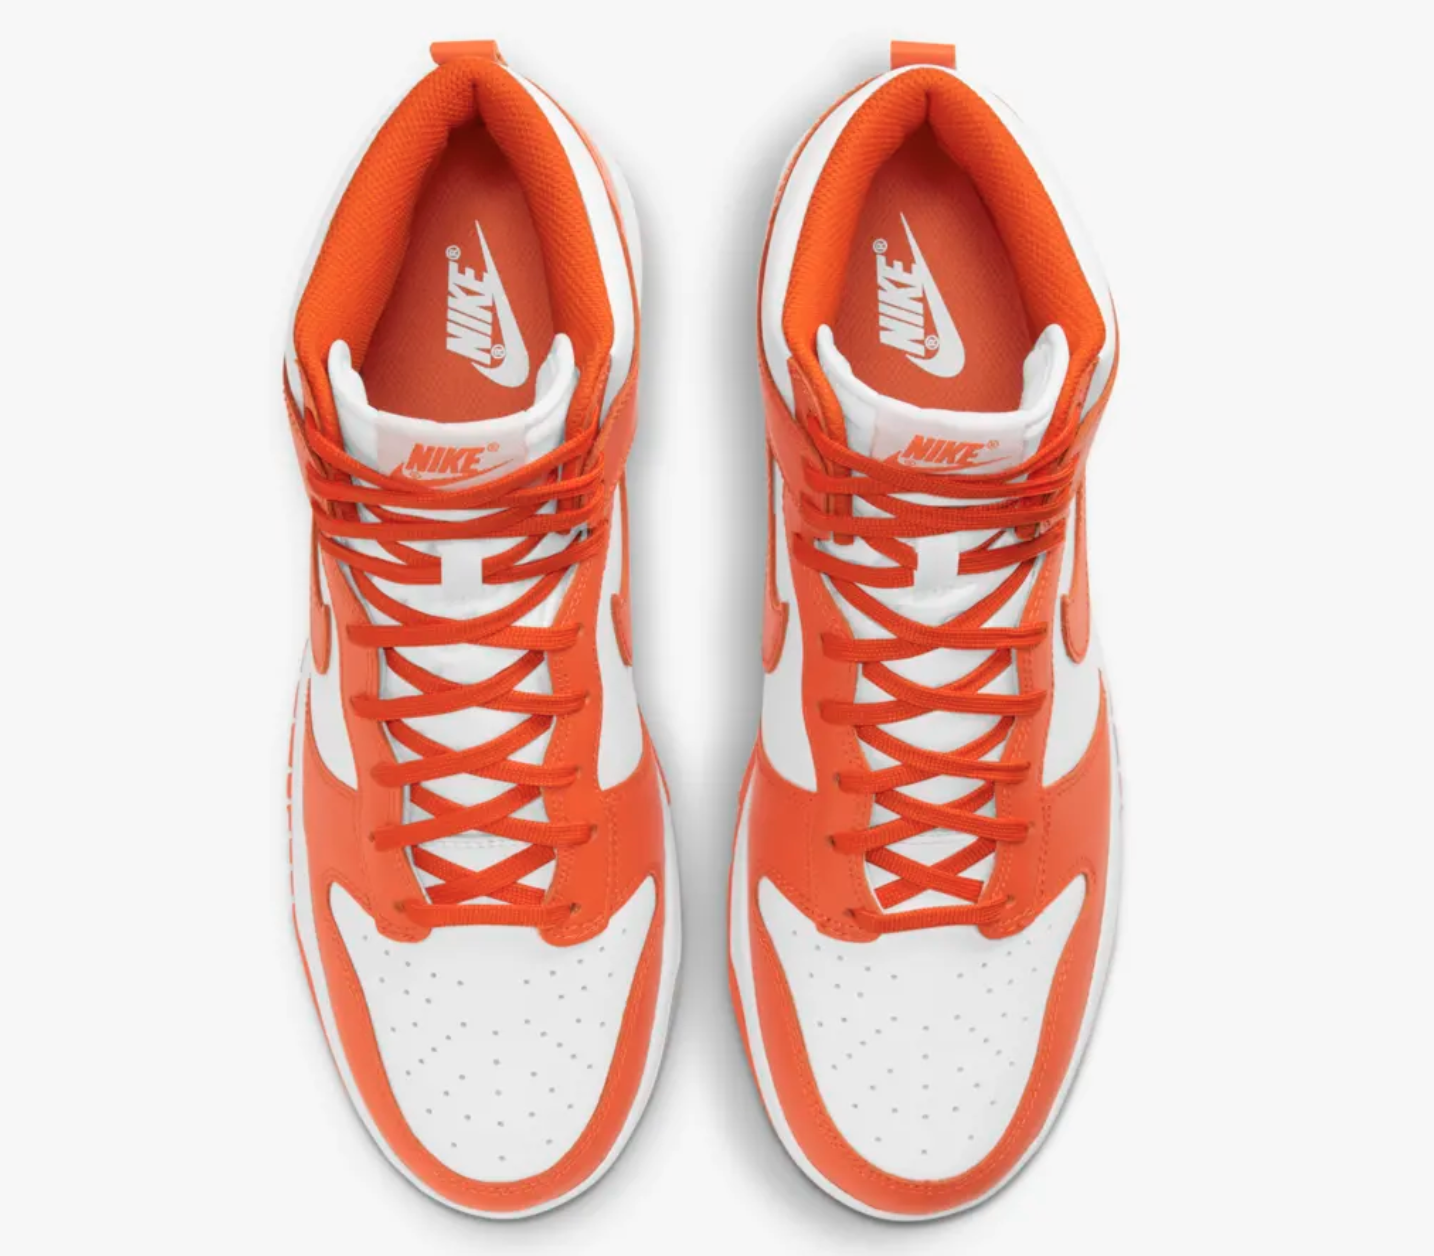 Nike's new Syracuse University basketball shoes 'Dunk High Orange